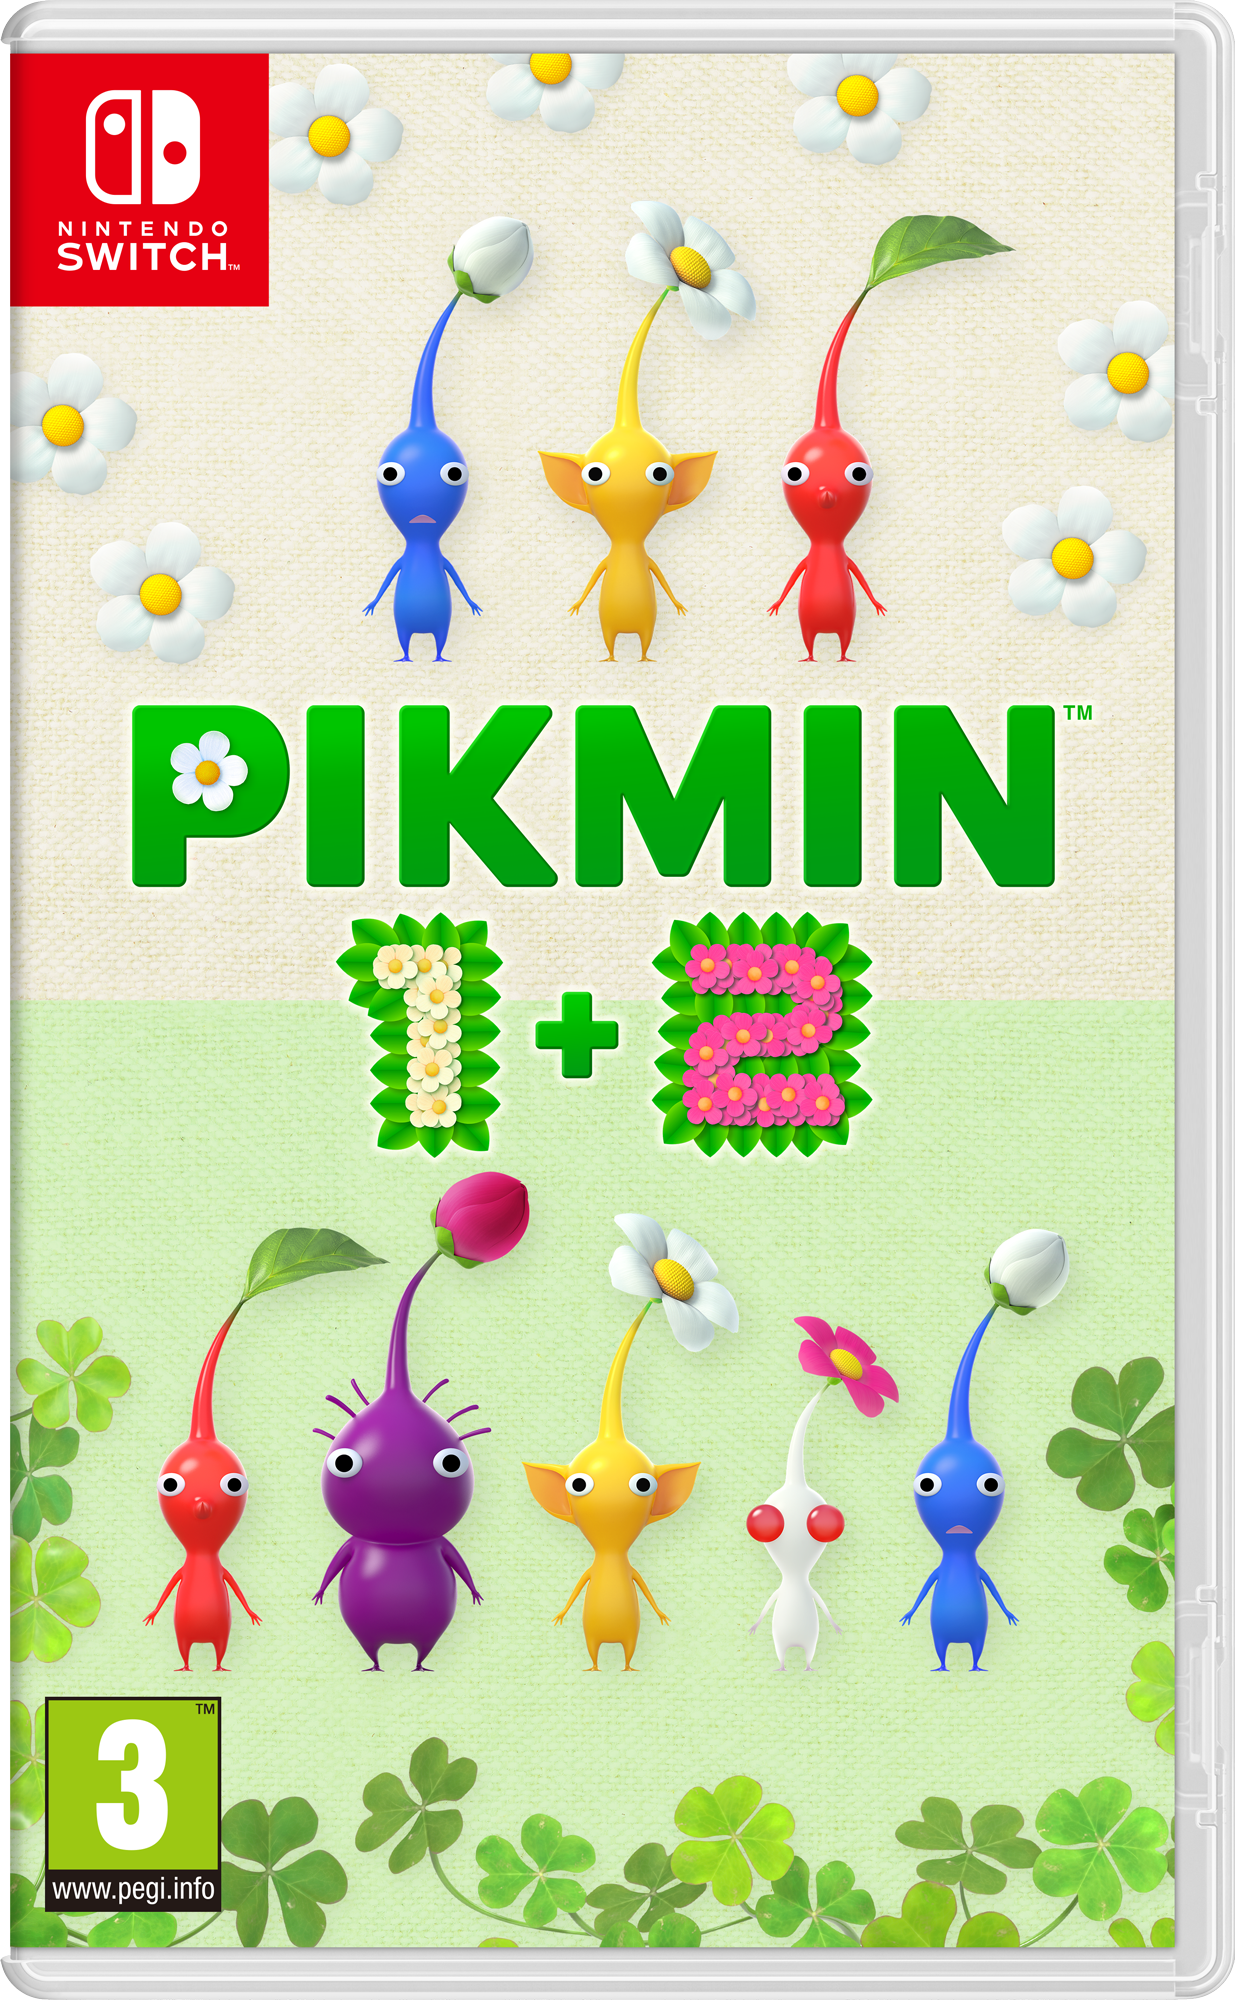 Pikmin 1+2 boxart